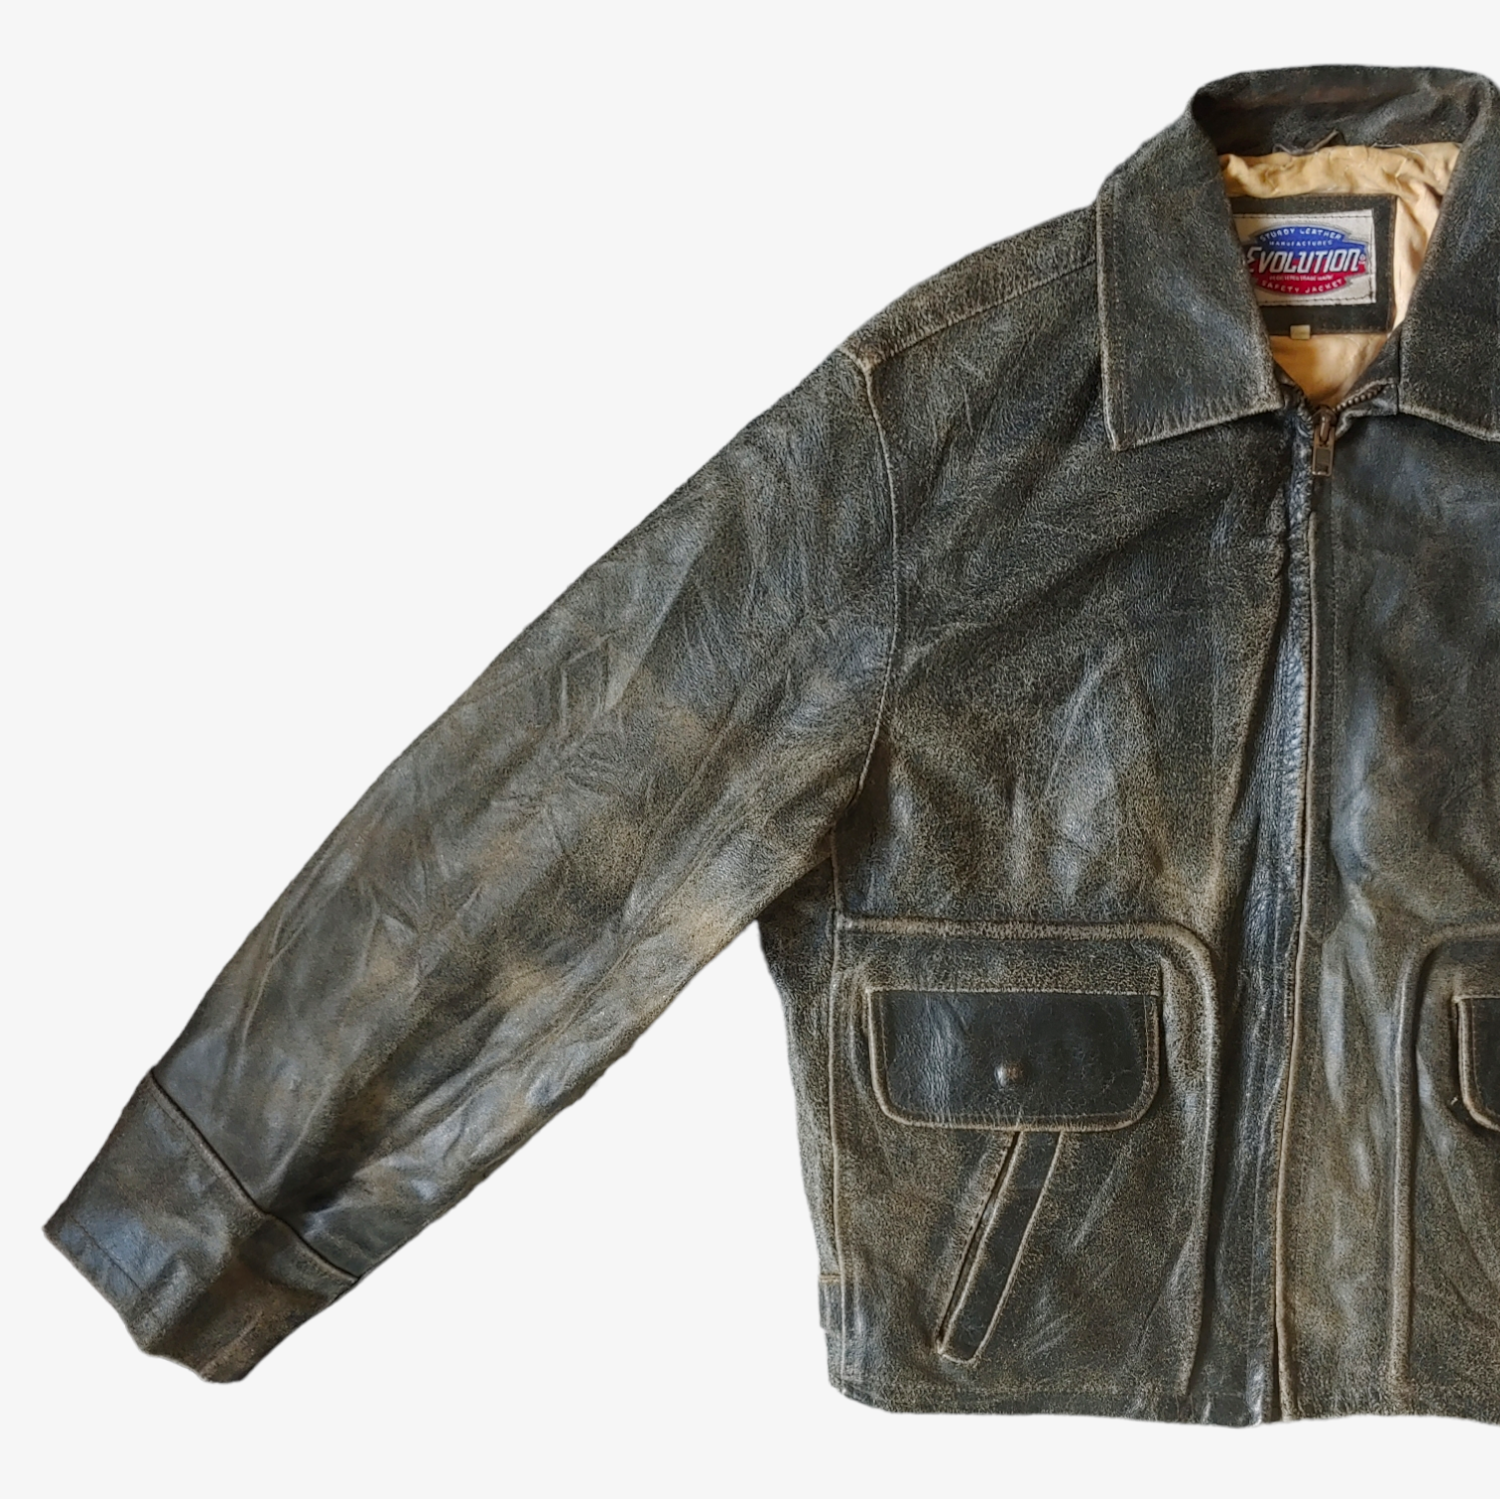 Vintage 90s Evolution Leather Trucker Biker Jacket Sleeve - Casspios Dream